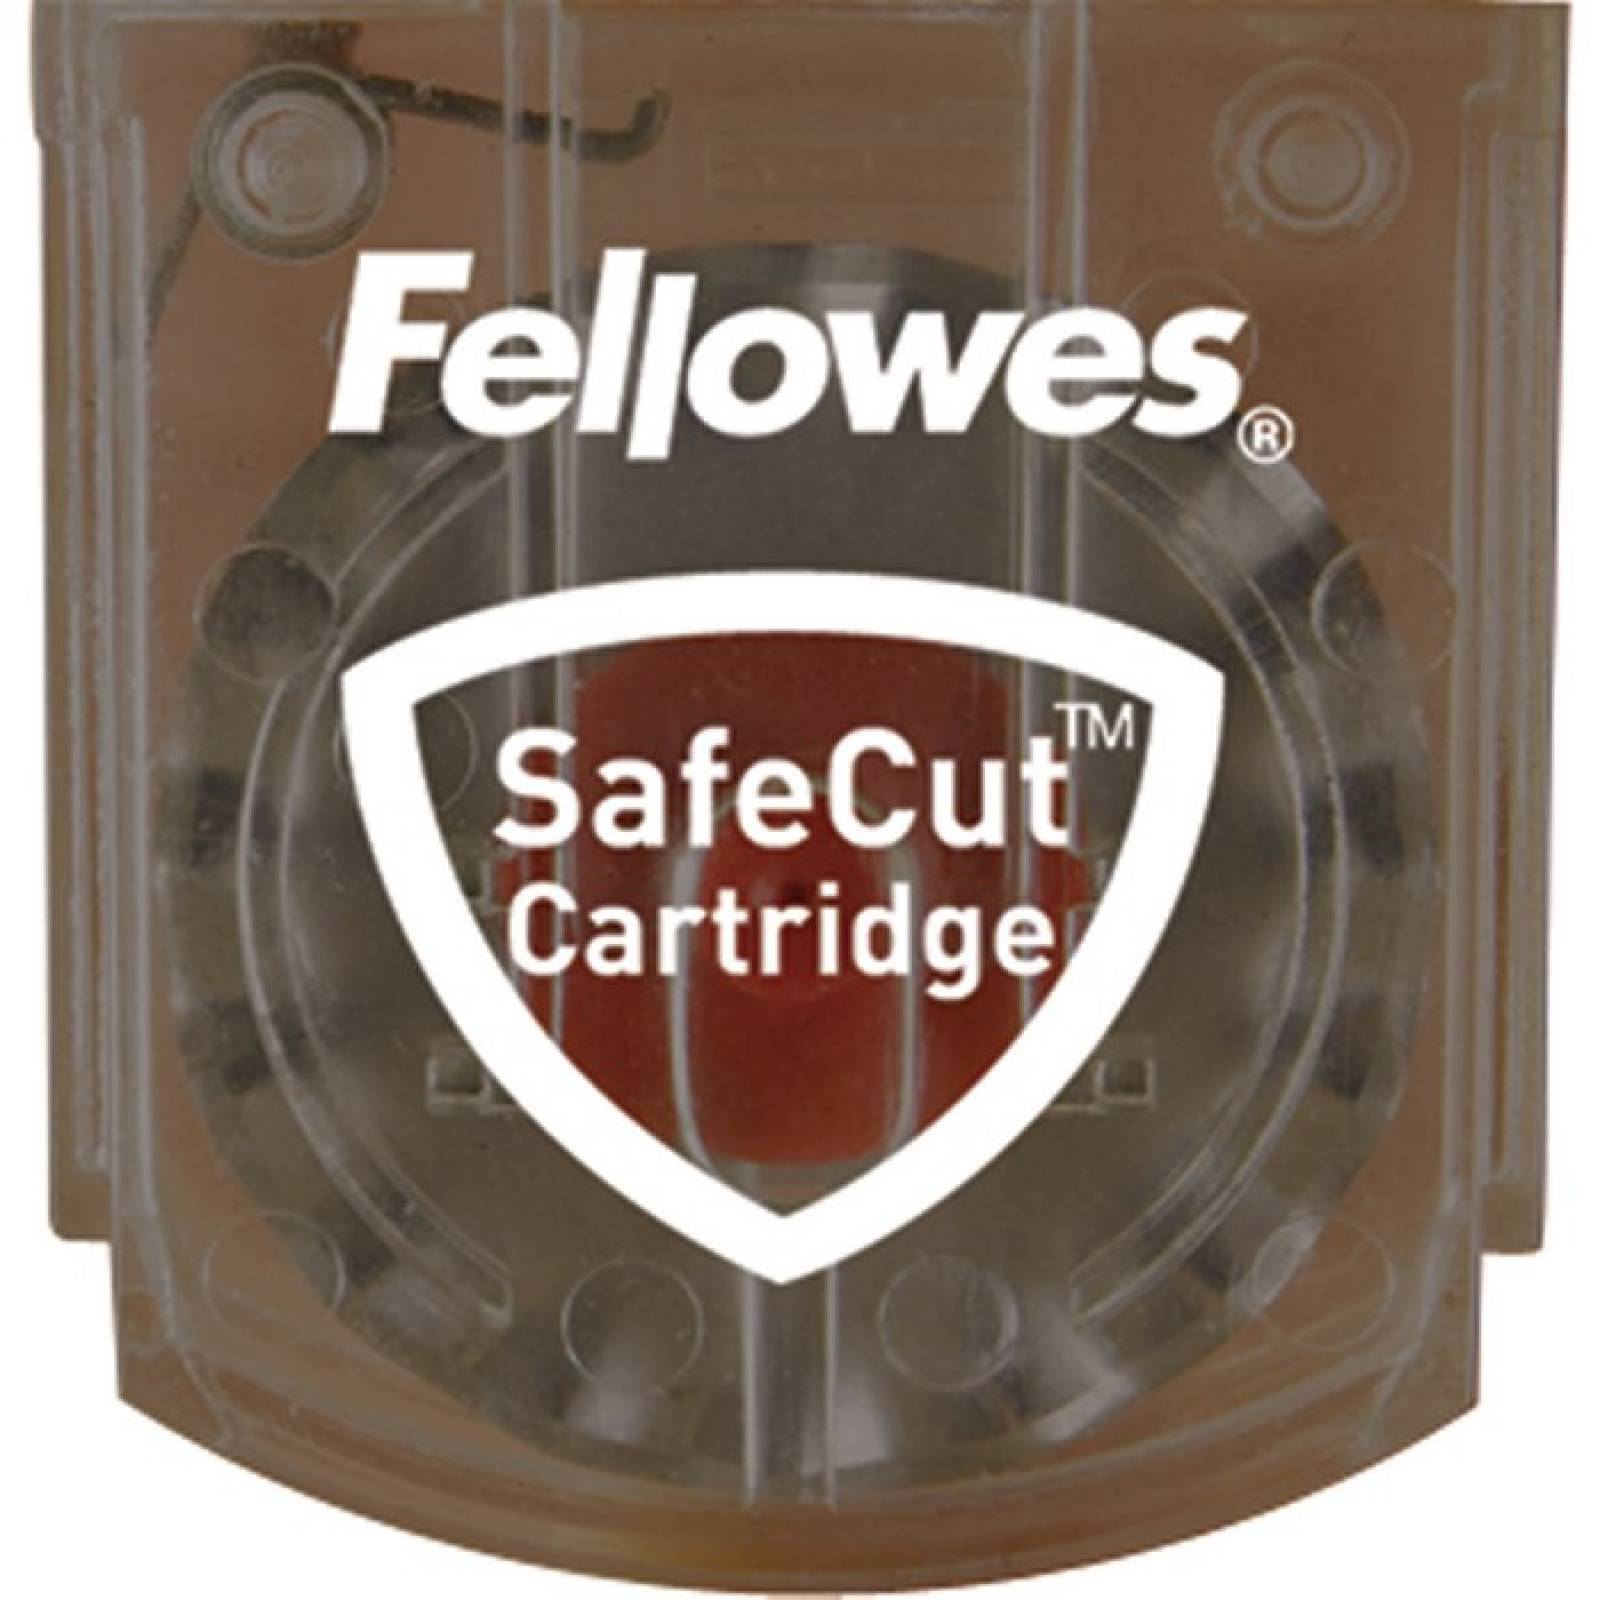 Kit de cuchillas de recortadora rotativa SafeCut de Fellowes  3 unidades surtidas